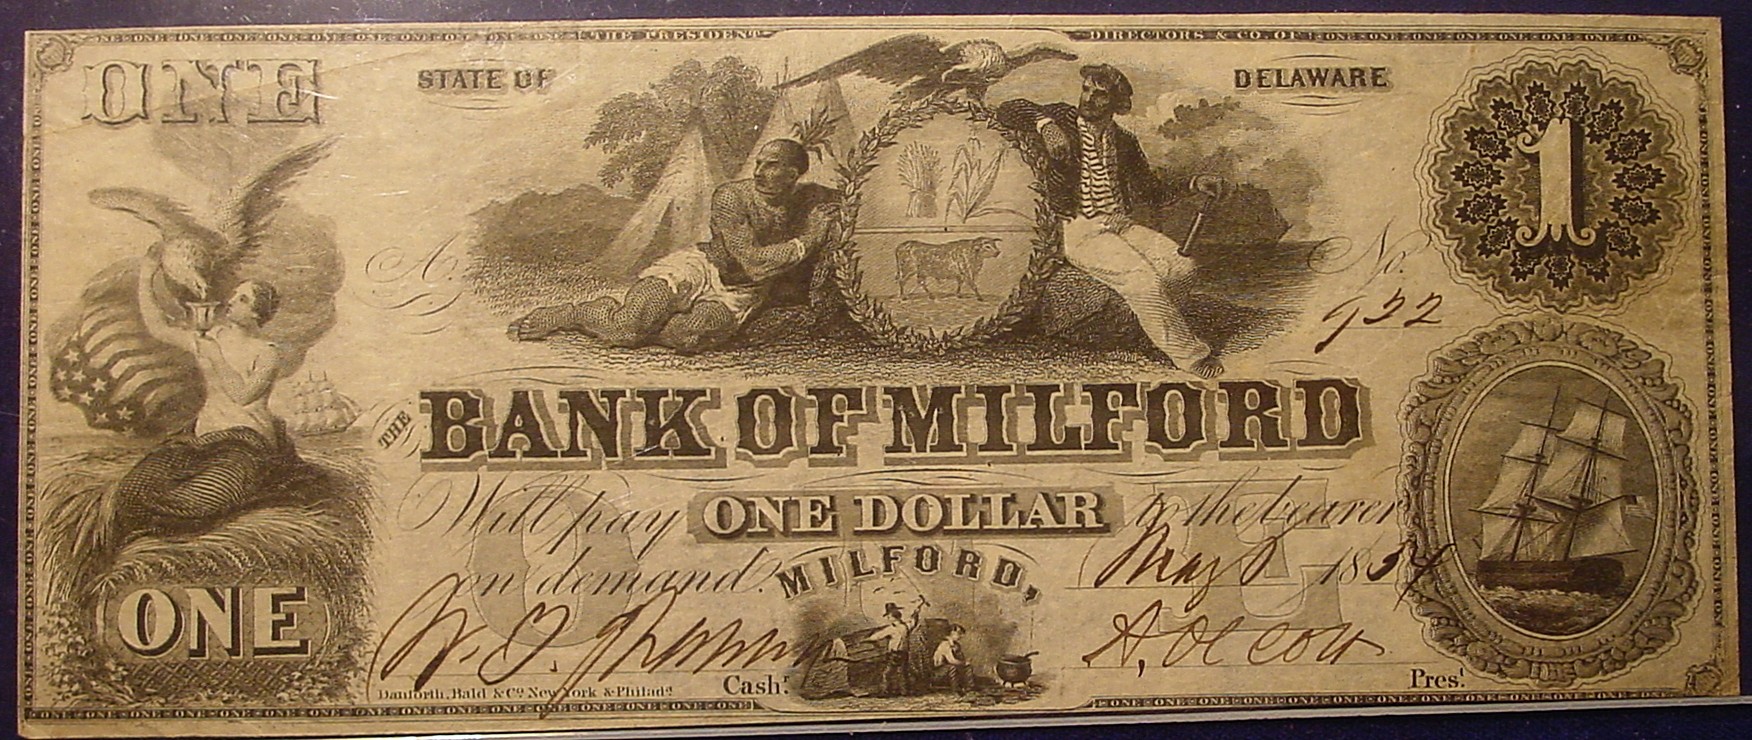 Milford 1 dol Note.jpg